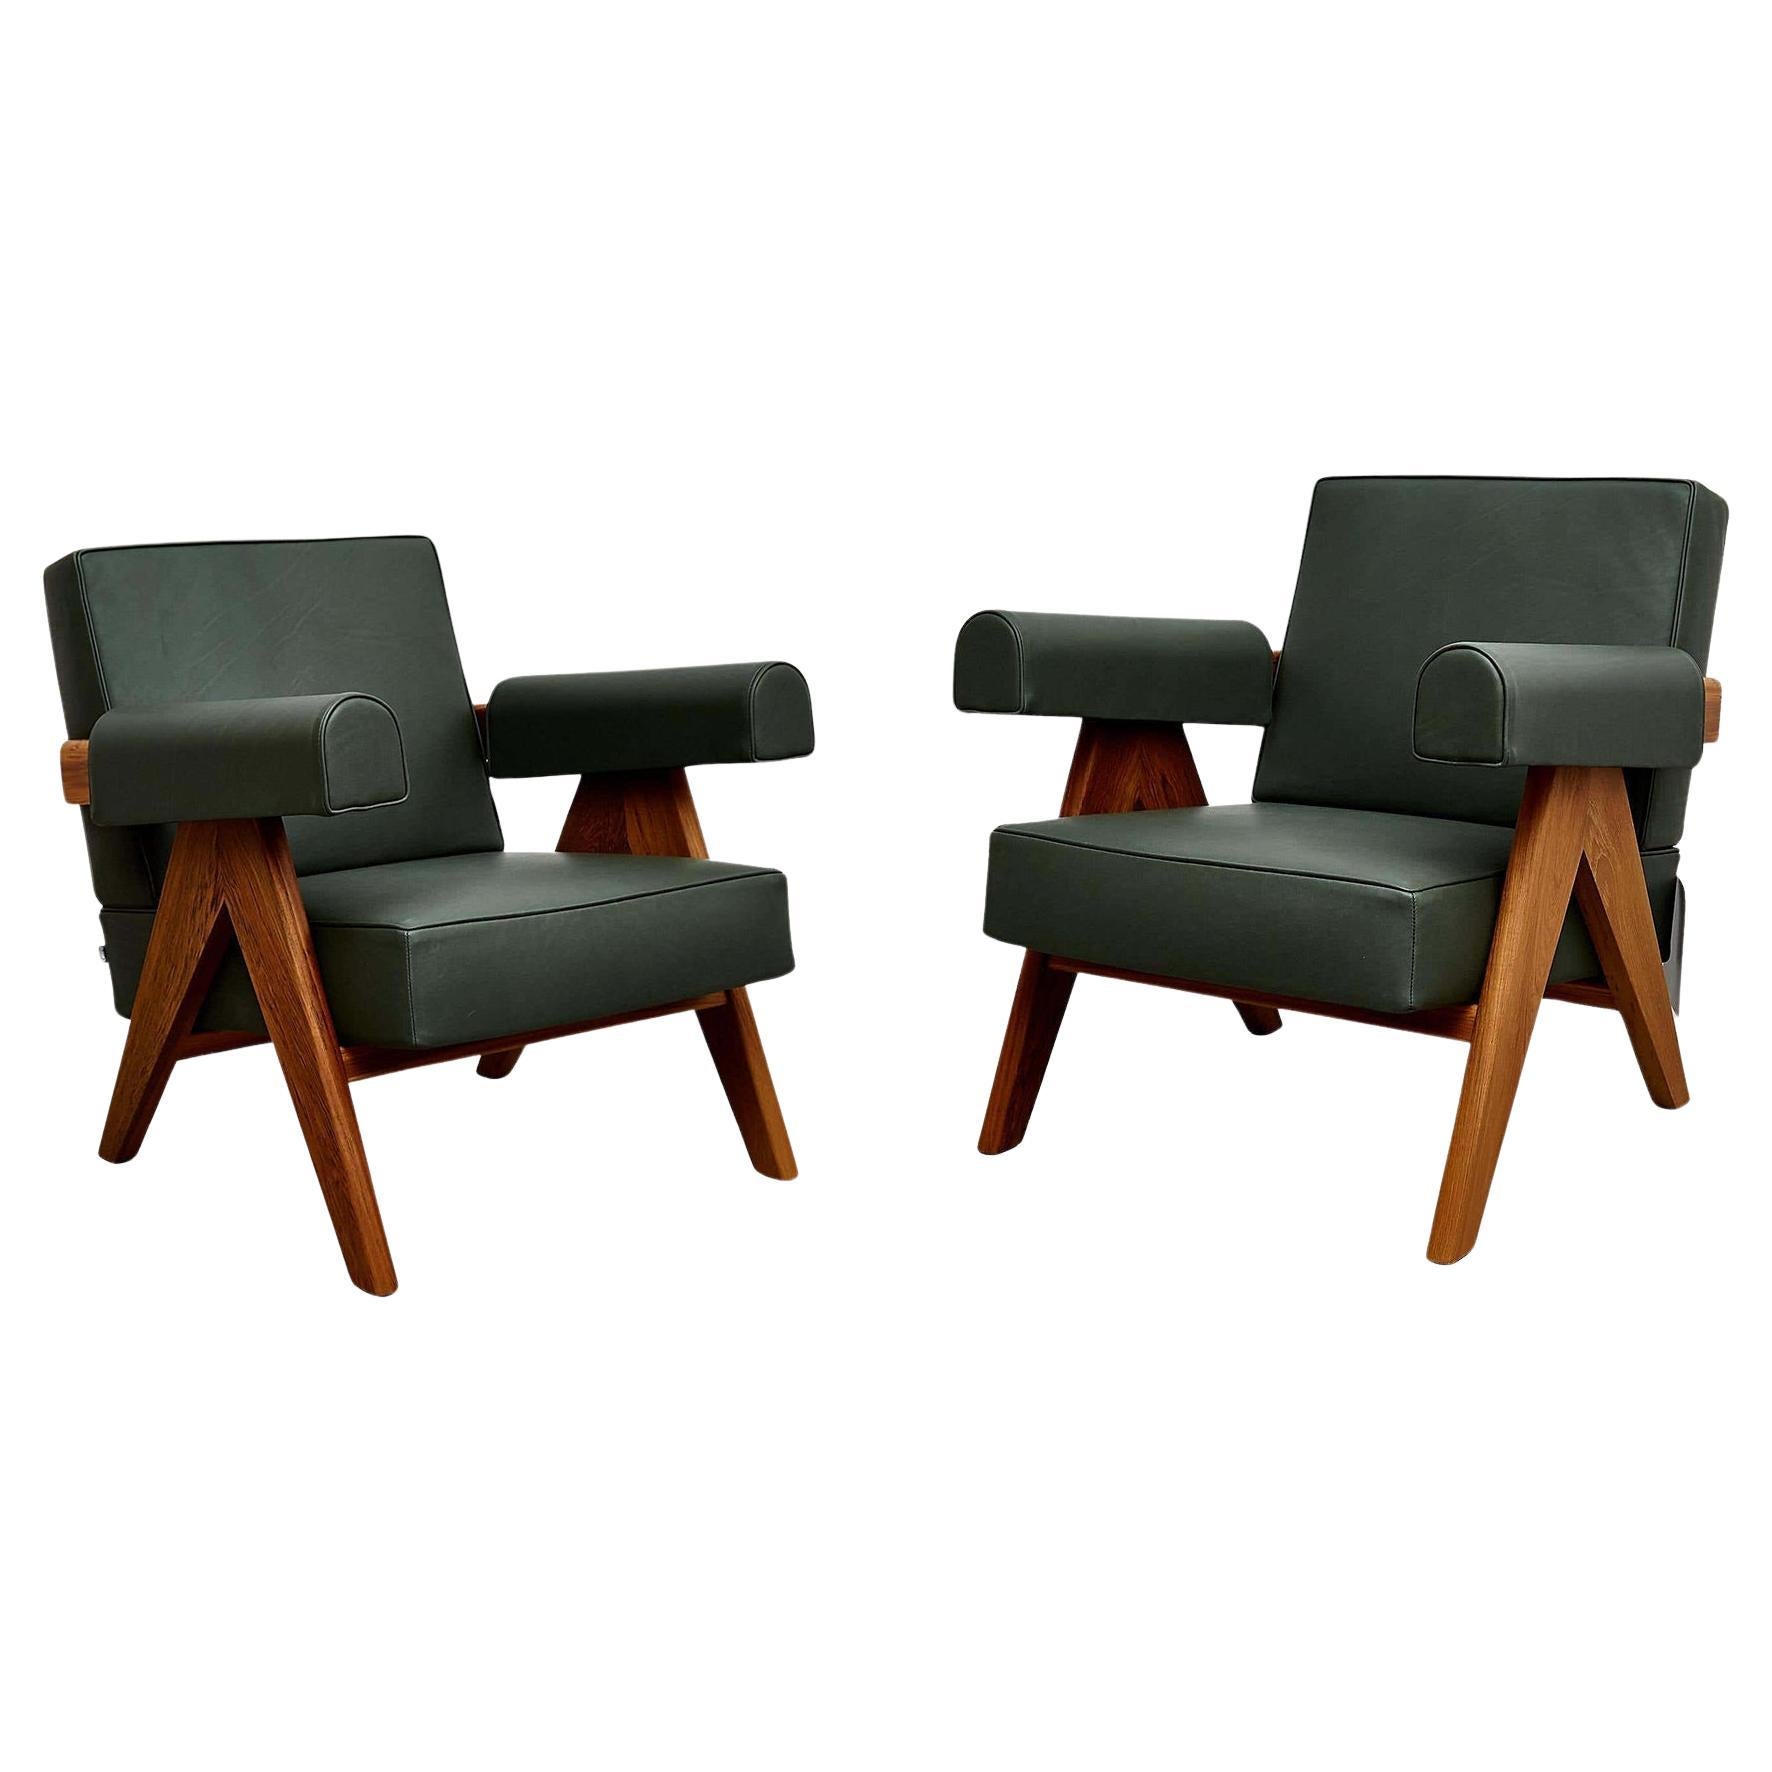 Offrez-vous un confort raffiné et une élégance intemporelle avec cet ensemble de deux fauteuils Pierre Jeanneret, conçus à l'origine vers 1950 et relancés de manière réfléchie en 2019 par Cassina en Italie. Plongez dans ce design emblématique qui